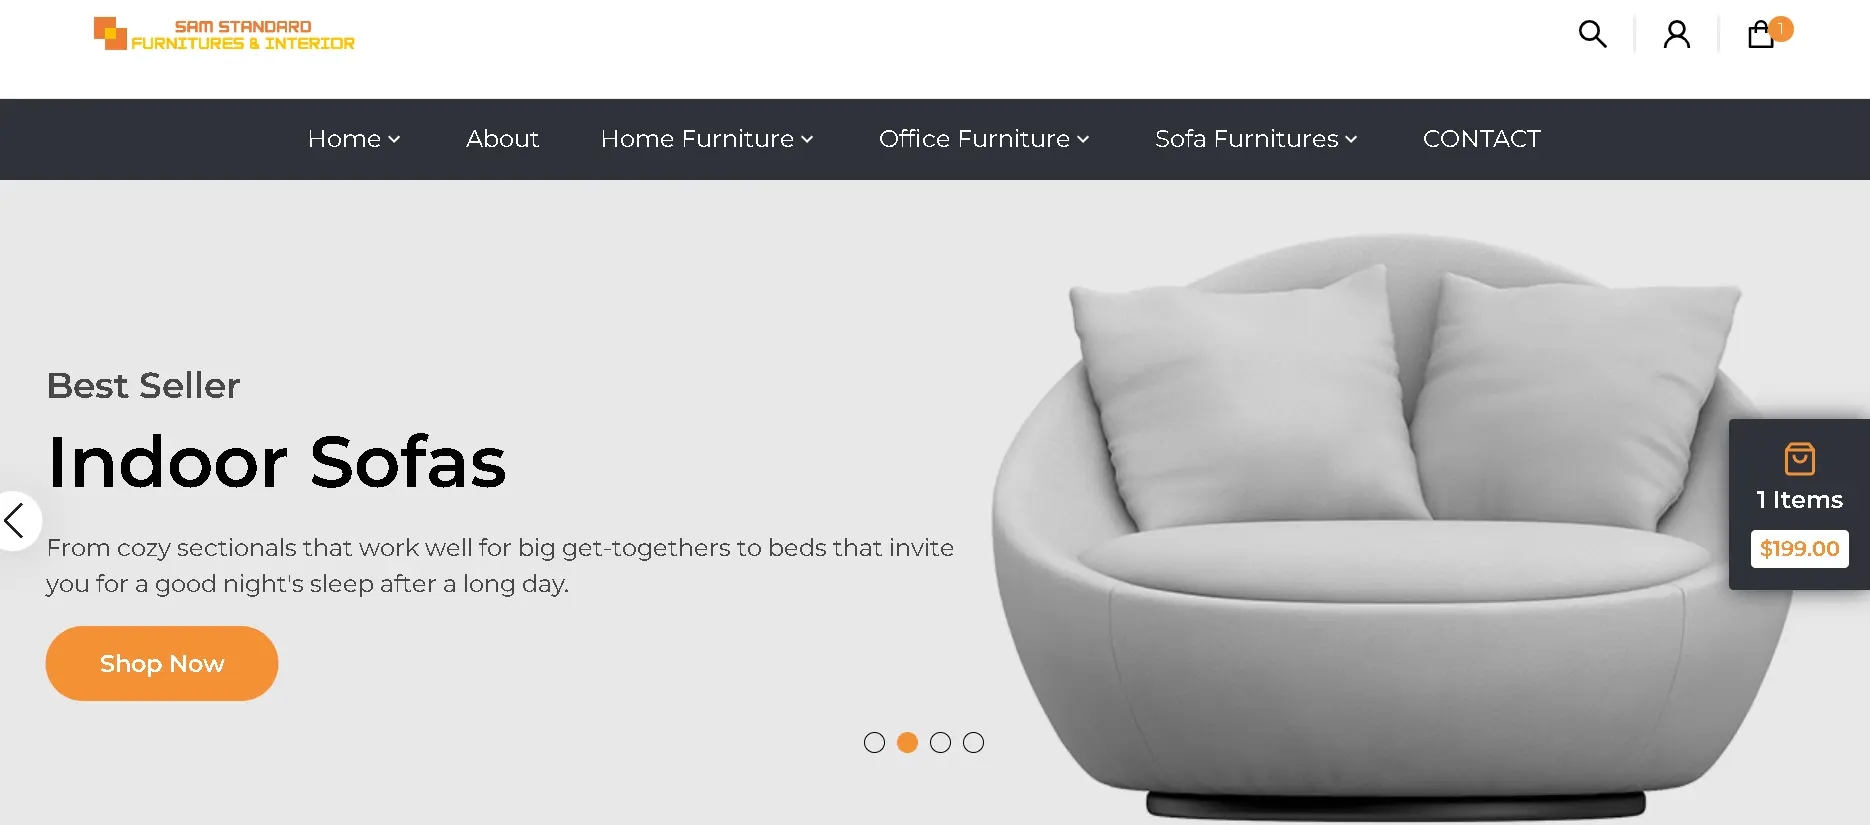 Sam-Standard-Furniture